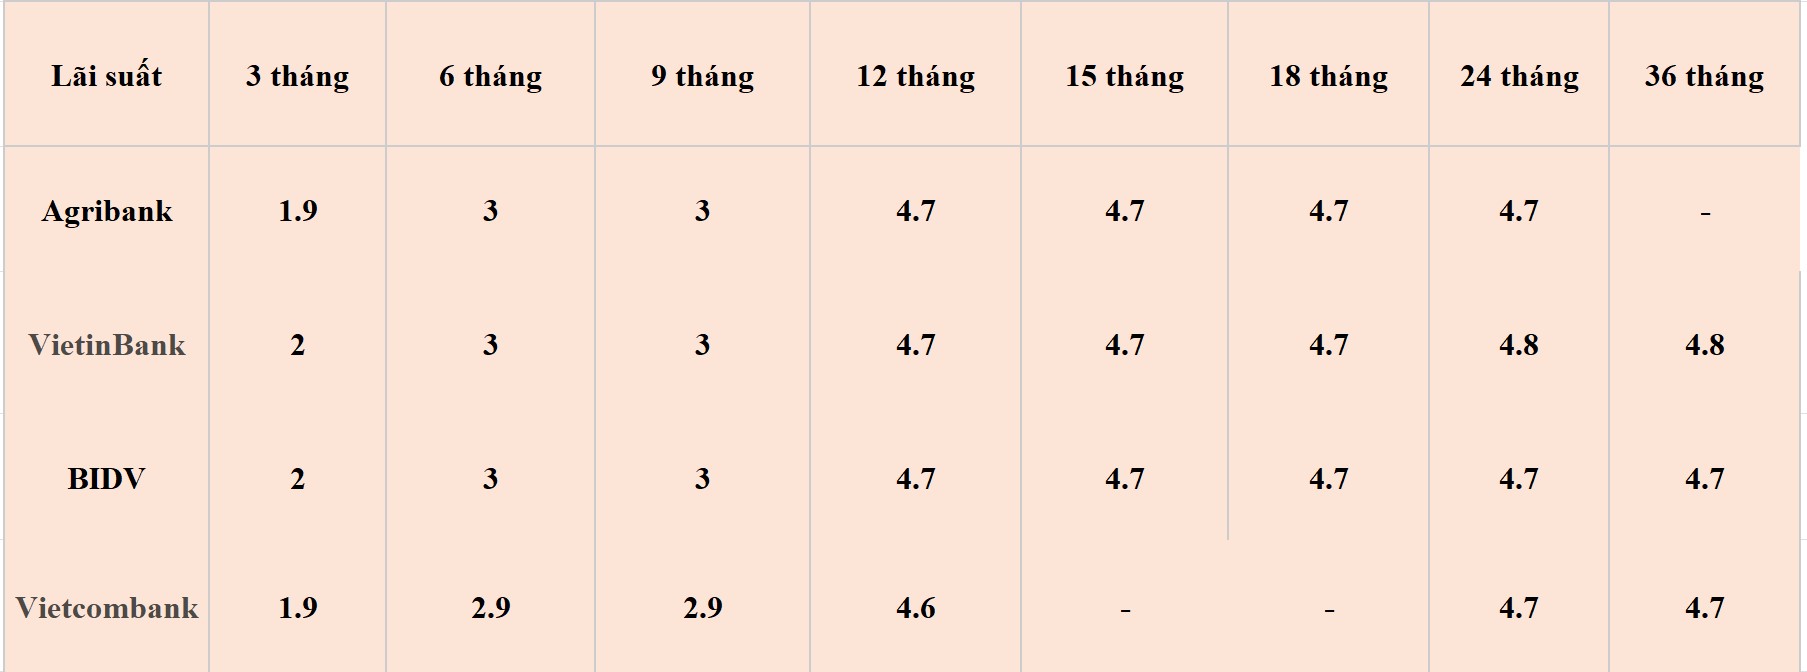 Bảng lãi suất các kỳ hạn tại Vietcombank, Agribank, VietinBank và BIDV. Số liệu ghi nhận ngày 13.5.2024. Đơn vị tính: %/năm. Bảng: Khương Duy  